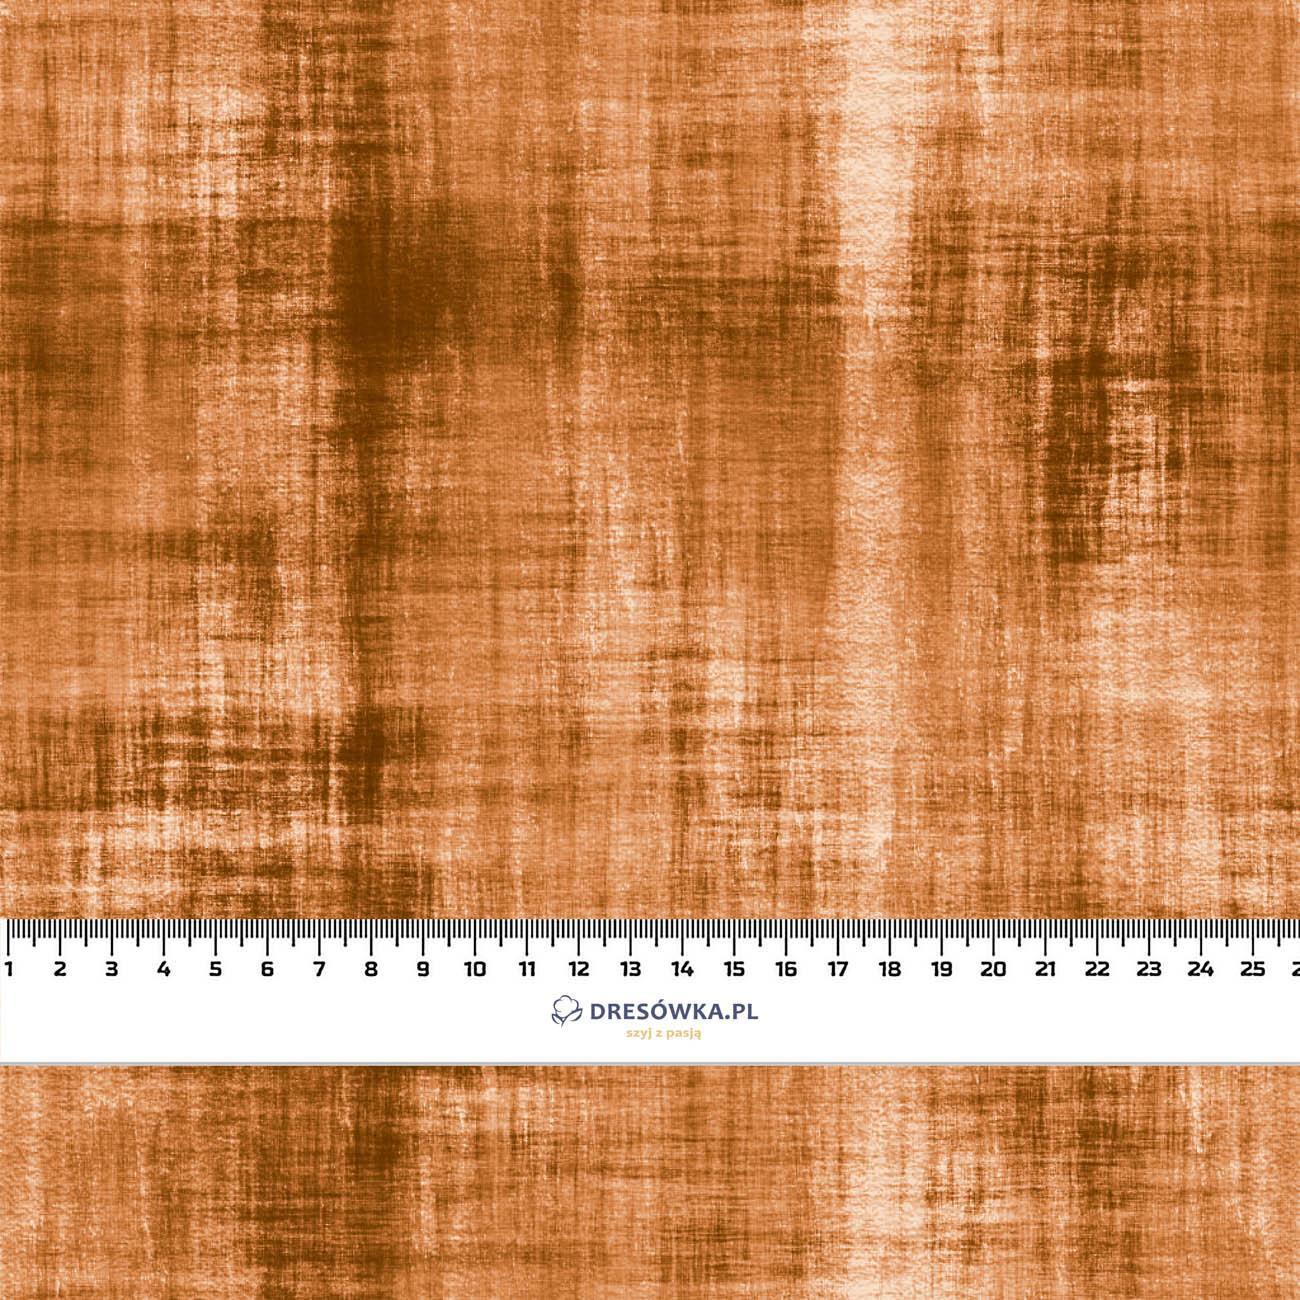 ACID WASH PAT. 2 (caramel) - Waterproof woven fabric